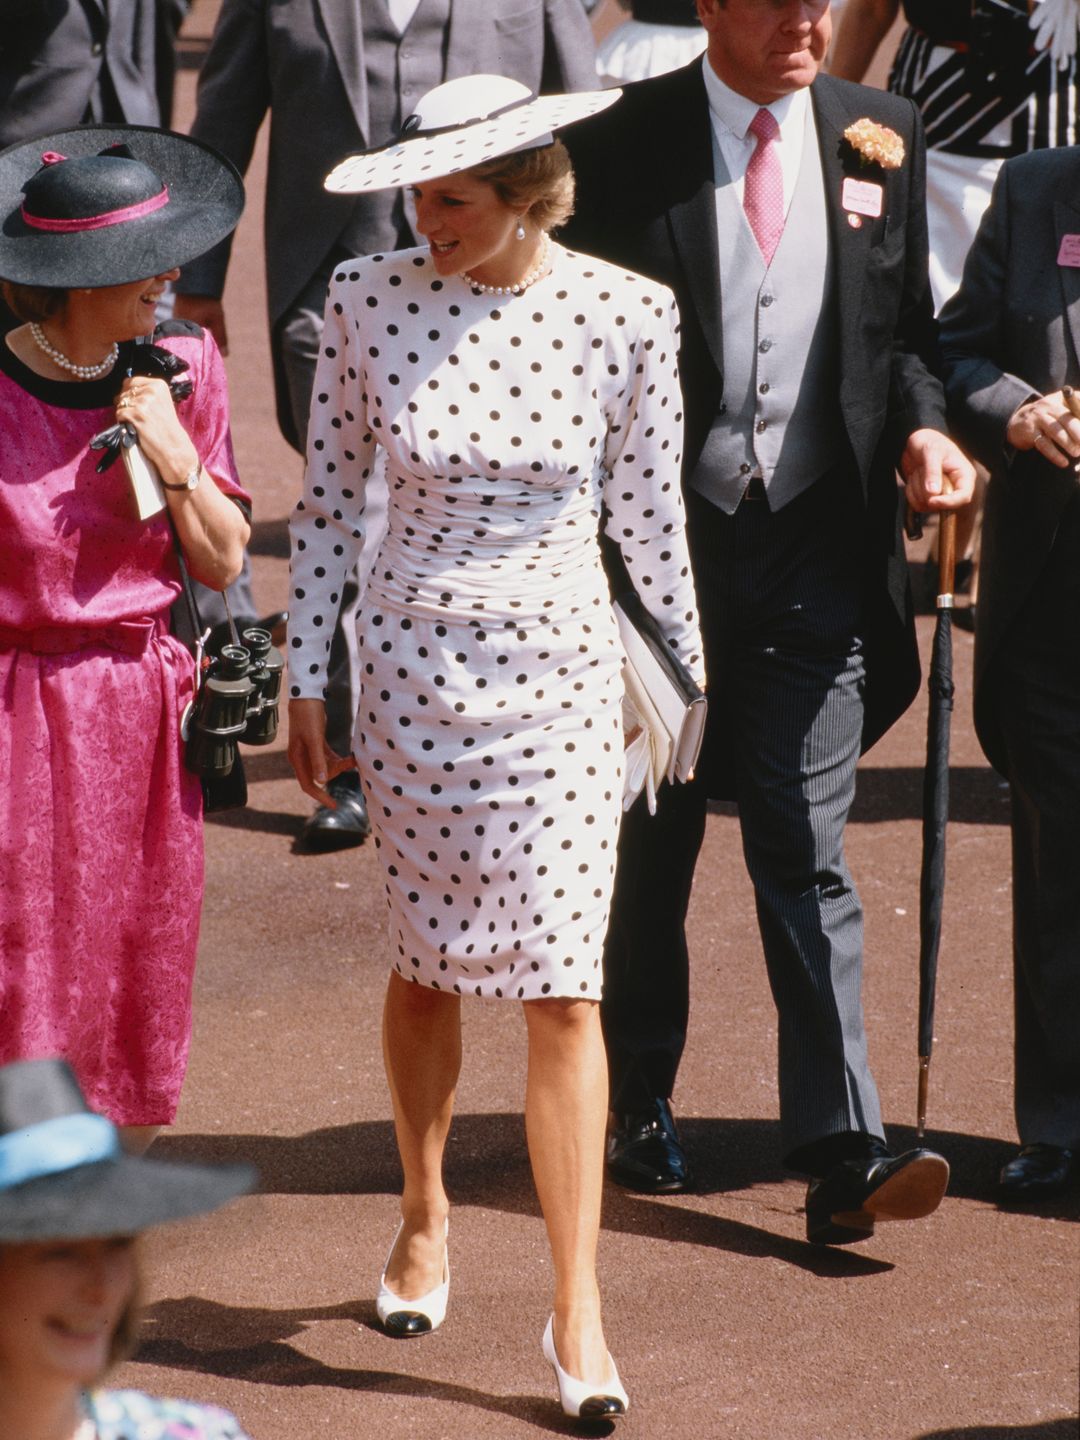 Diana, Princesa de Gales, participou da corrida de Ascot na Inglaterra, usando um vestido preto e branco manchado de Victor Edelstein e um chapéu Philip Somerville, em junho de 1988.  